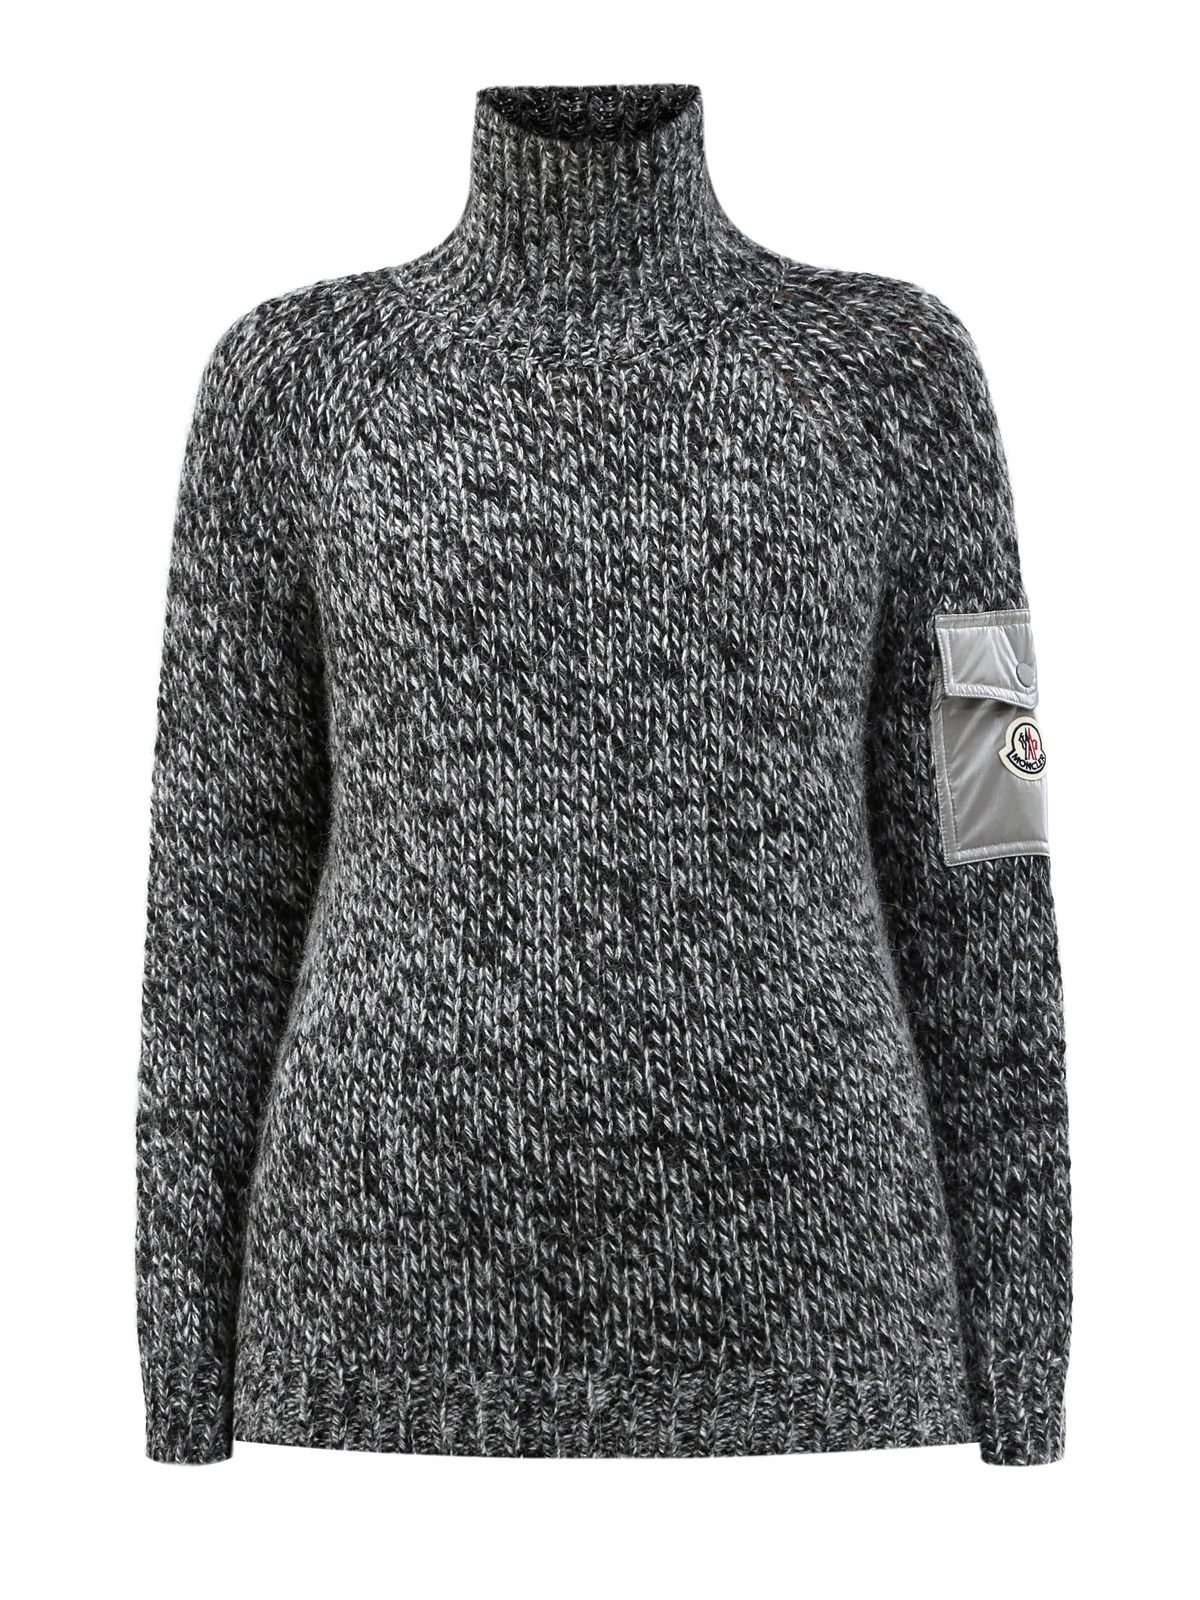 Джемпер из теплой пряжи фактурной вязки с карманом MONCLER, цвет серый, размер XS;S;M;L - фото 1